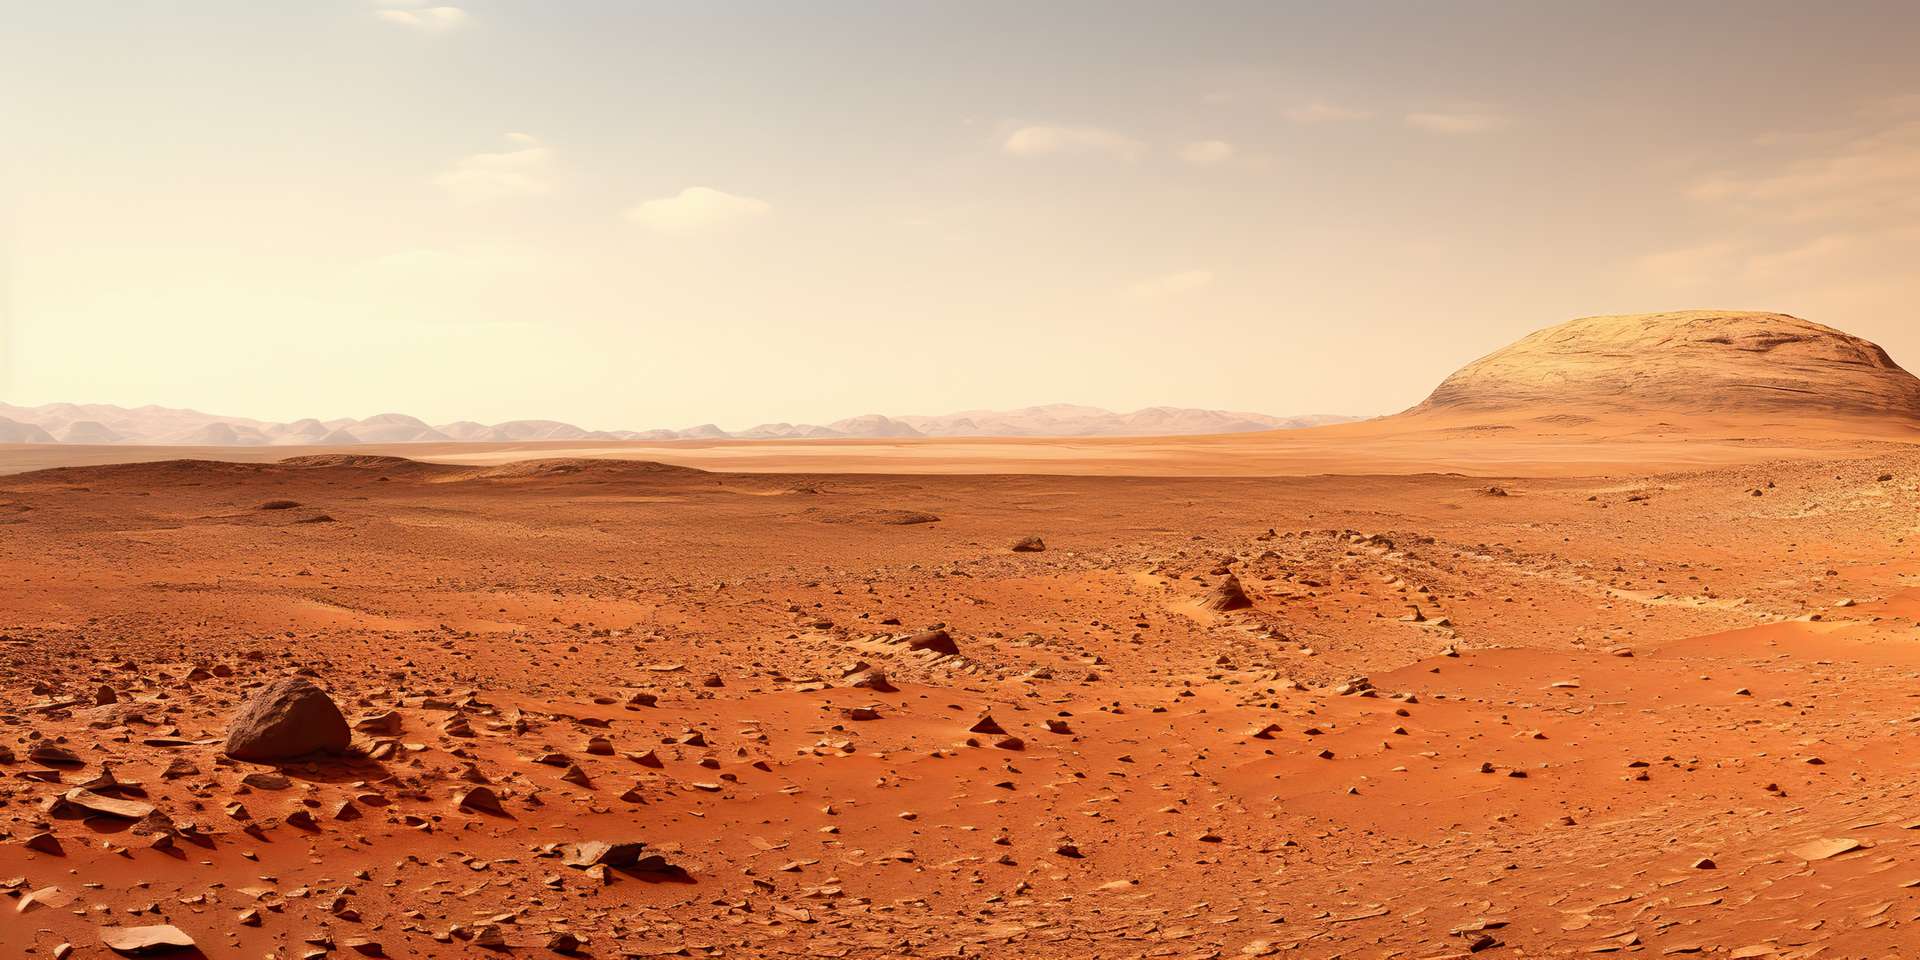 Il rover scopre strani schemi poligonali sepolti nel terreno